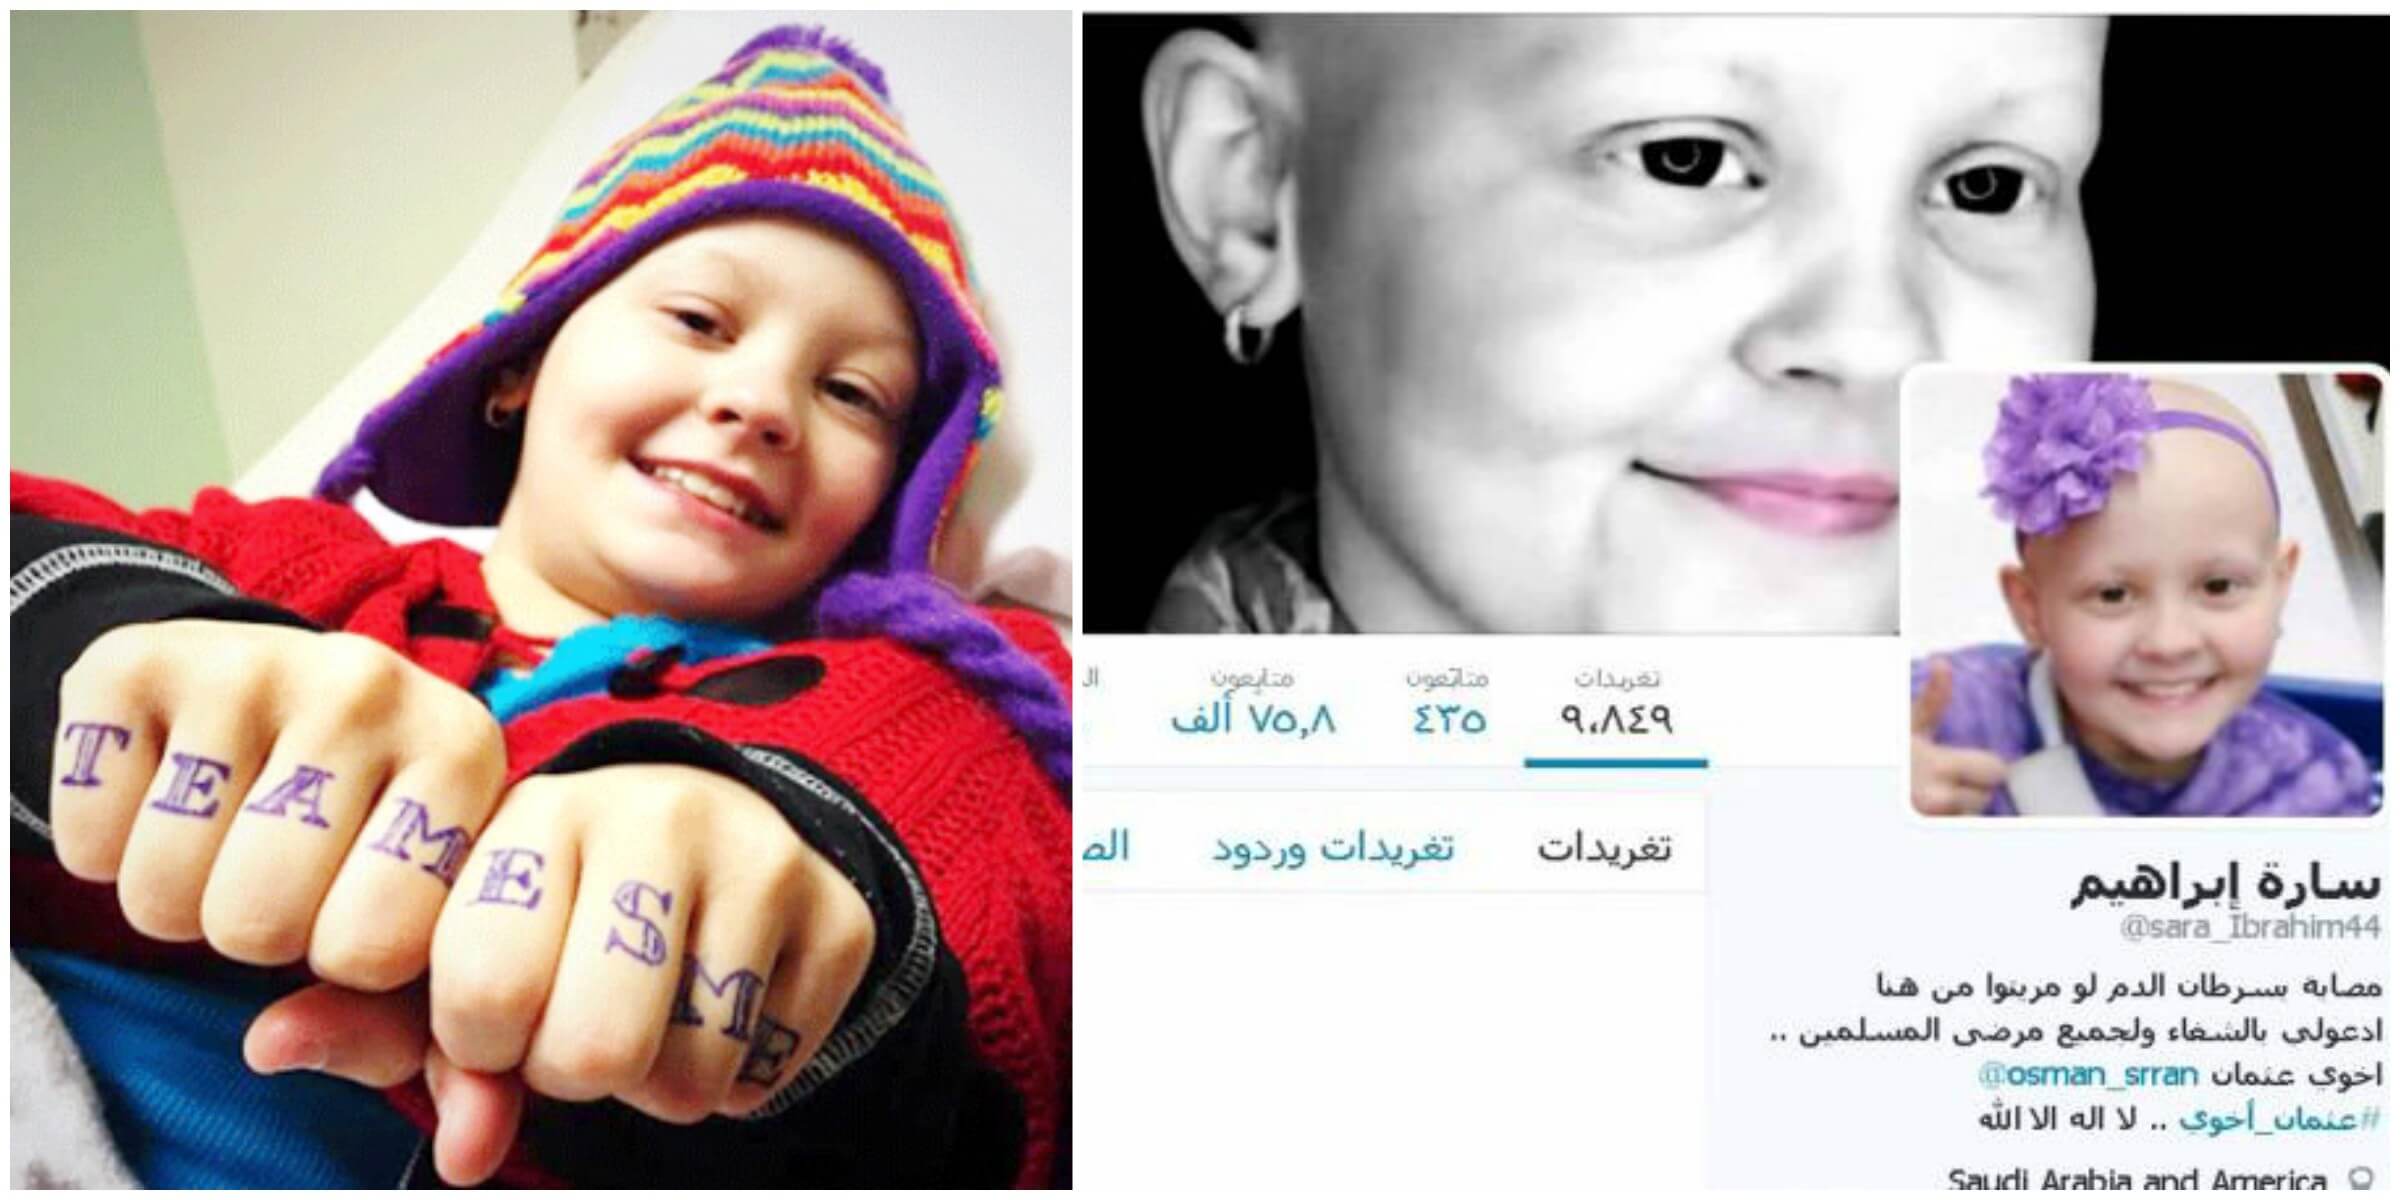 الكذبة أو الإشاعة الأولى: مريضة السرطان الوهمية سارة إبراهيم وحسابها الـ(الوهمي) على تويتر